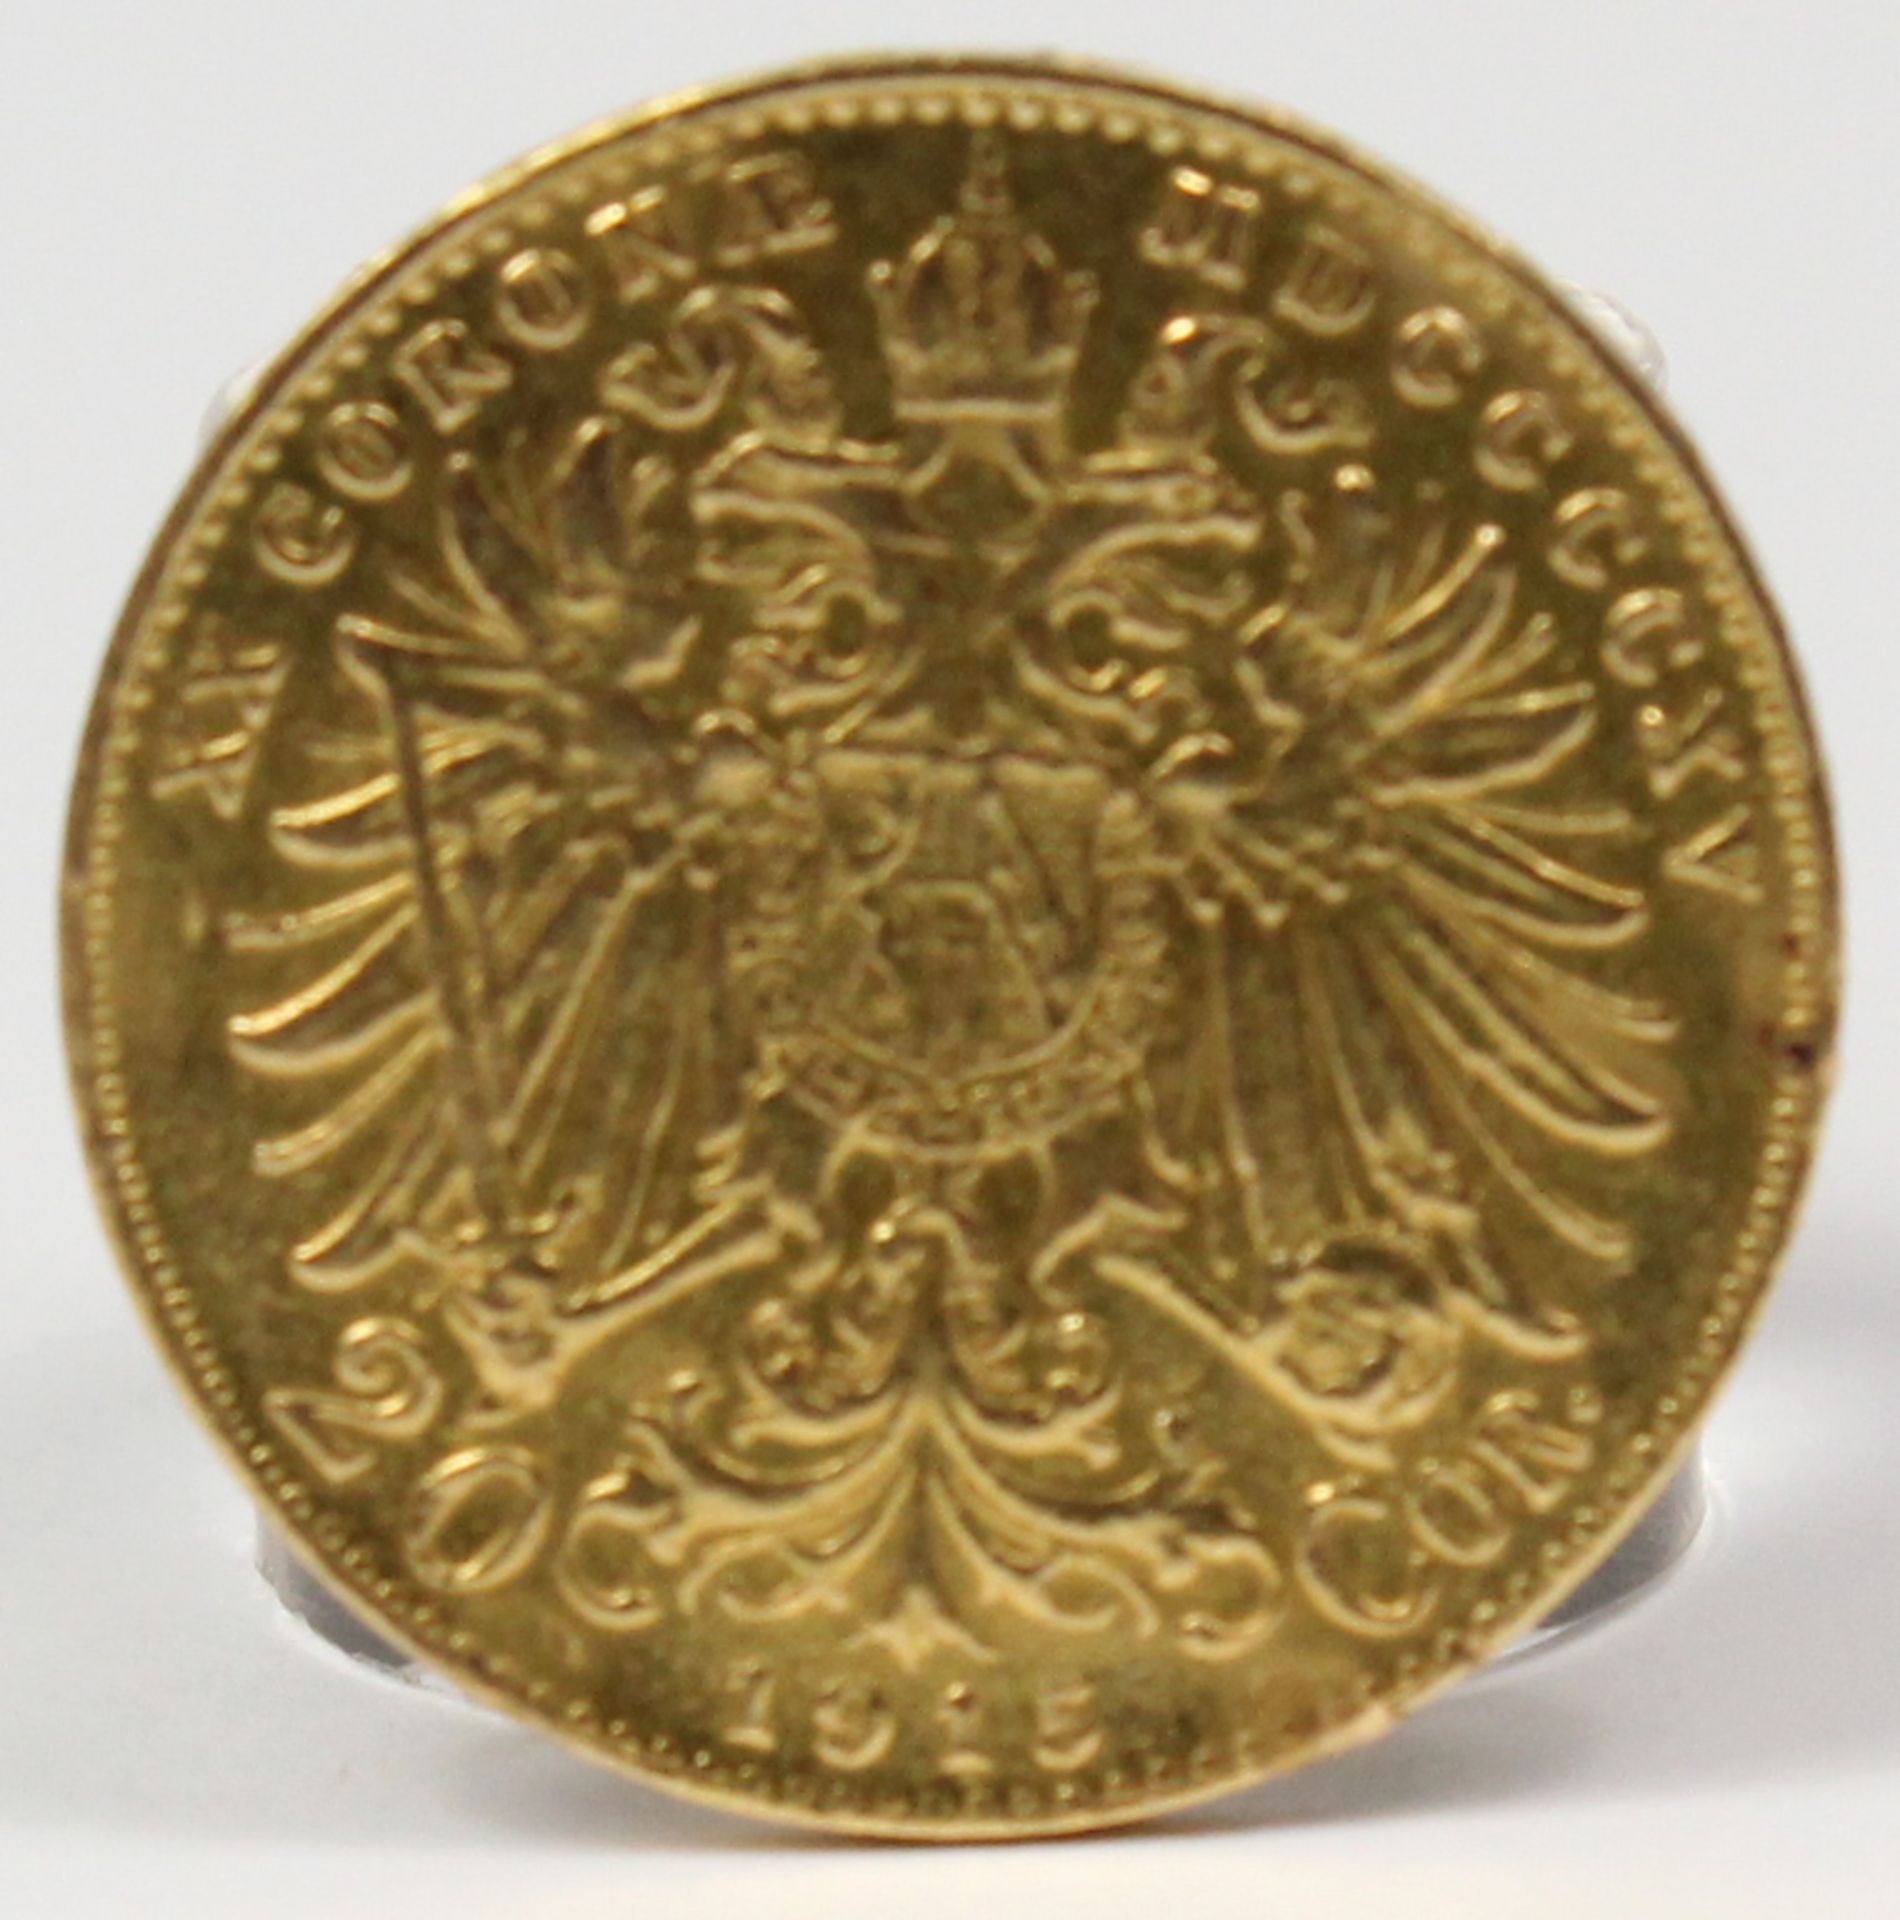 Goldmünze. 20 Kronen. Österreich. Kaiser Franz Joseph. 1915. - Bild 2 aus 4